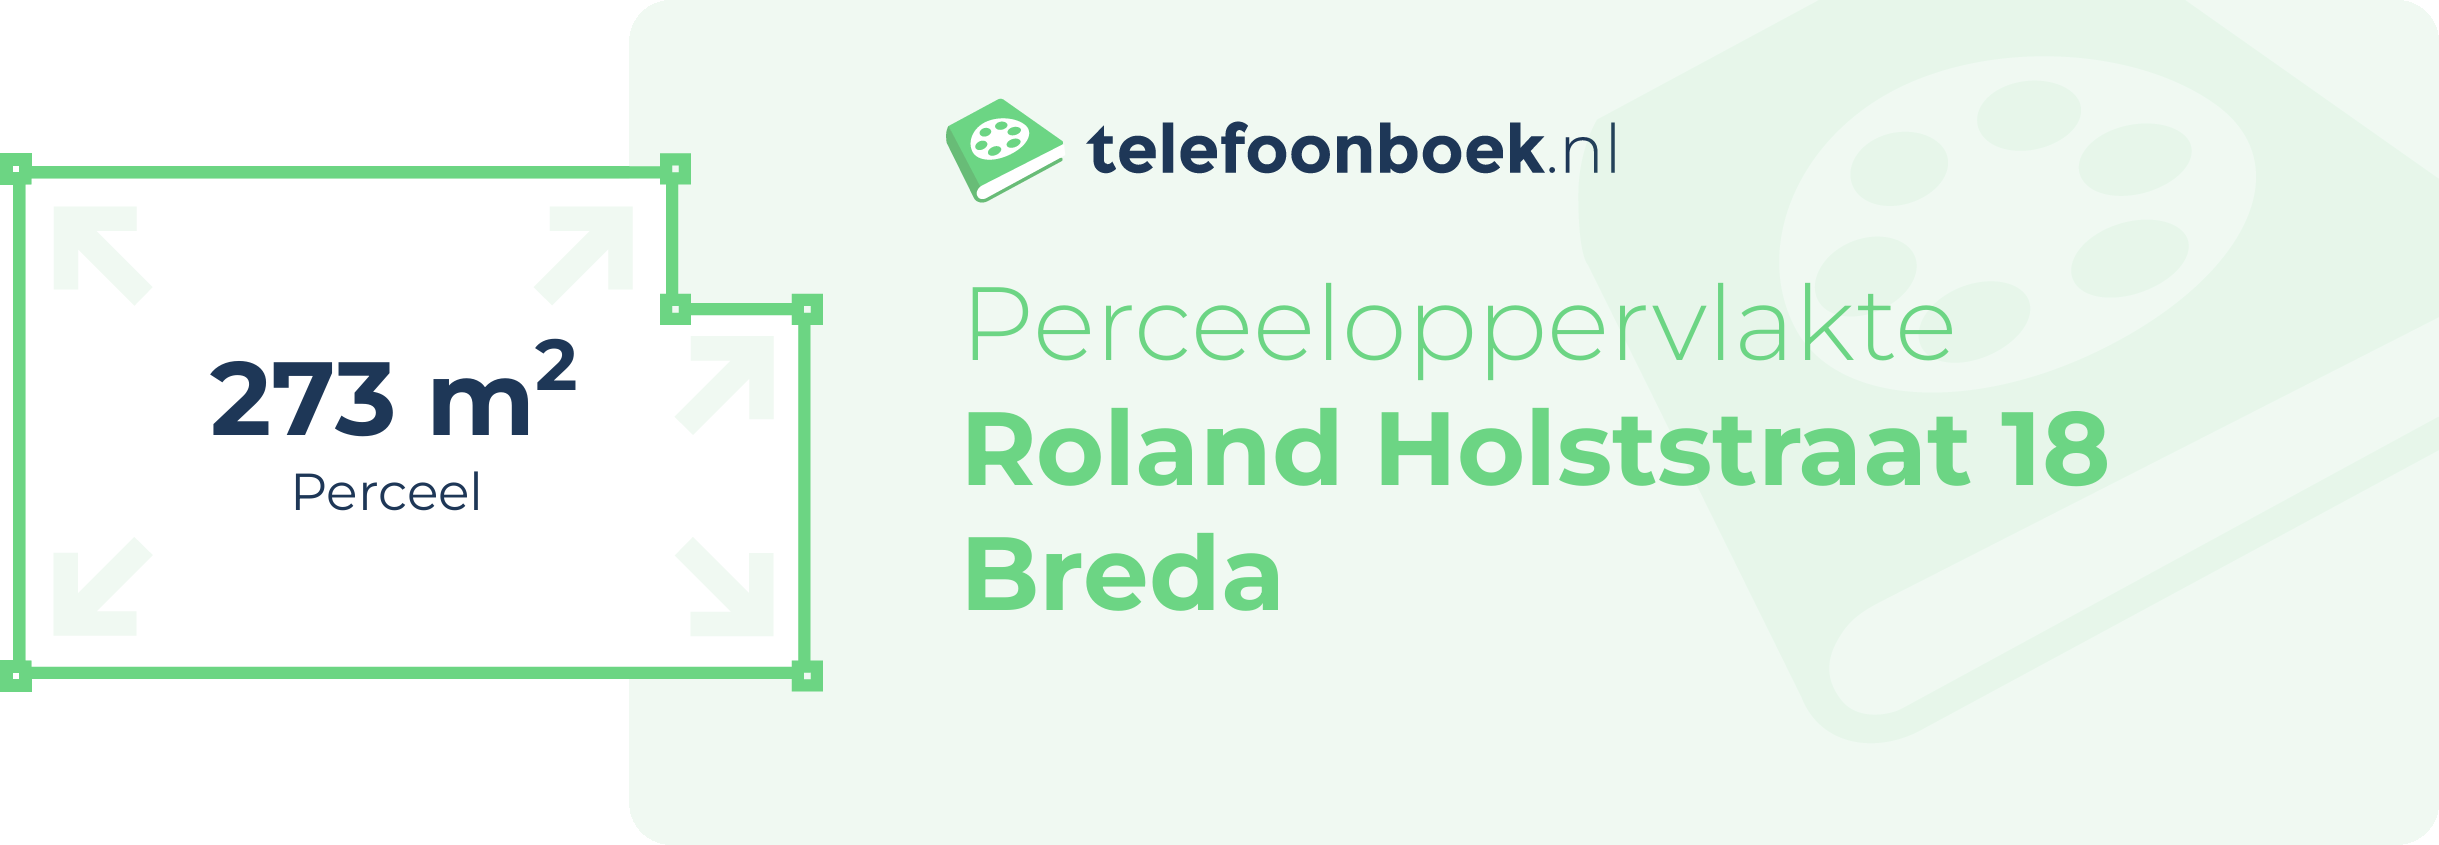 Perceeloppervlakte Roland Holststraat 18 Breda